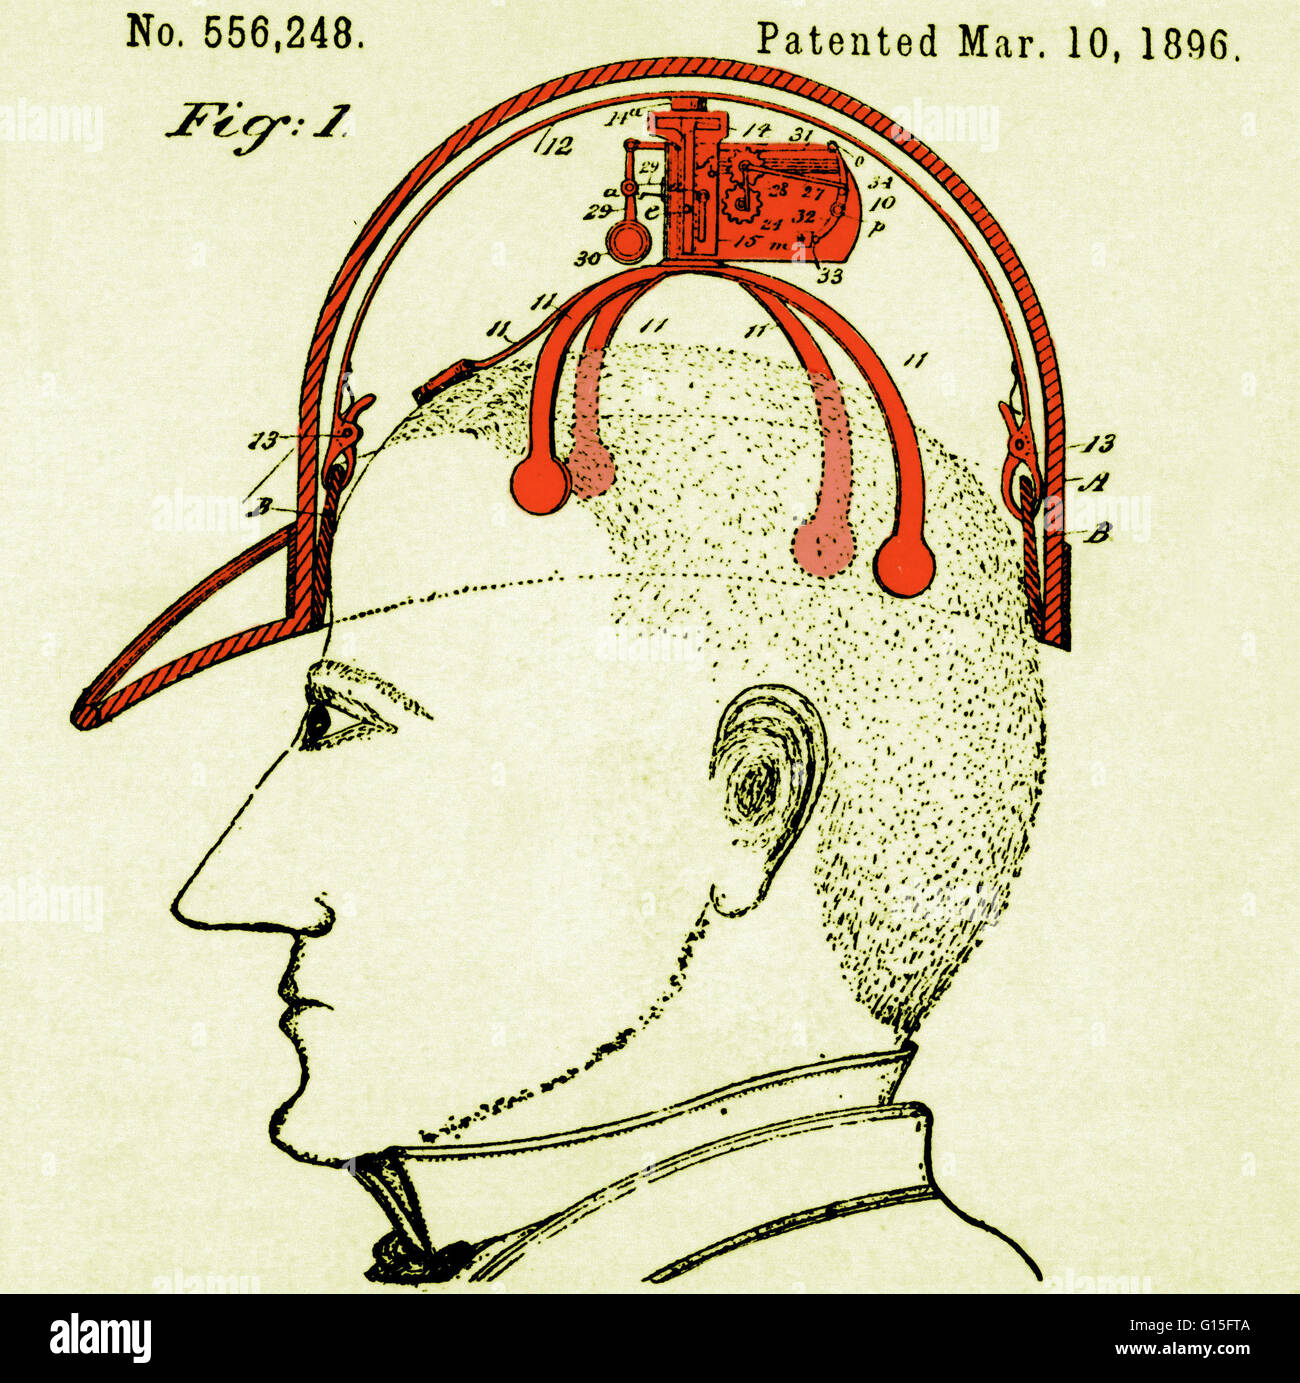 Schematische Darstellung eines grüßte Gerät, das am 10. März 1896, von James C. Boyle patentiert wurde. Das Gerät ist auf "automatisch Effekt höflichen anreden," ausgelegt, durch Kippen der Hut ohne den Einsatz von Händen. Patent Nr. 556.248. Stockfoto